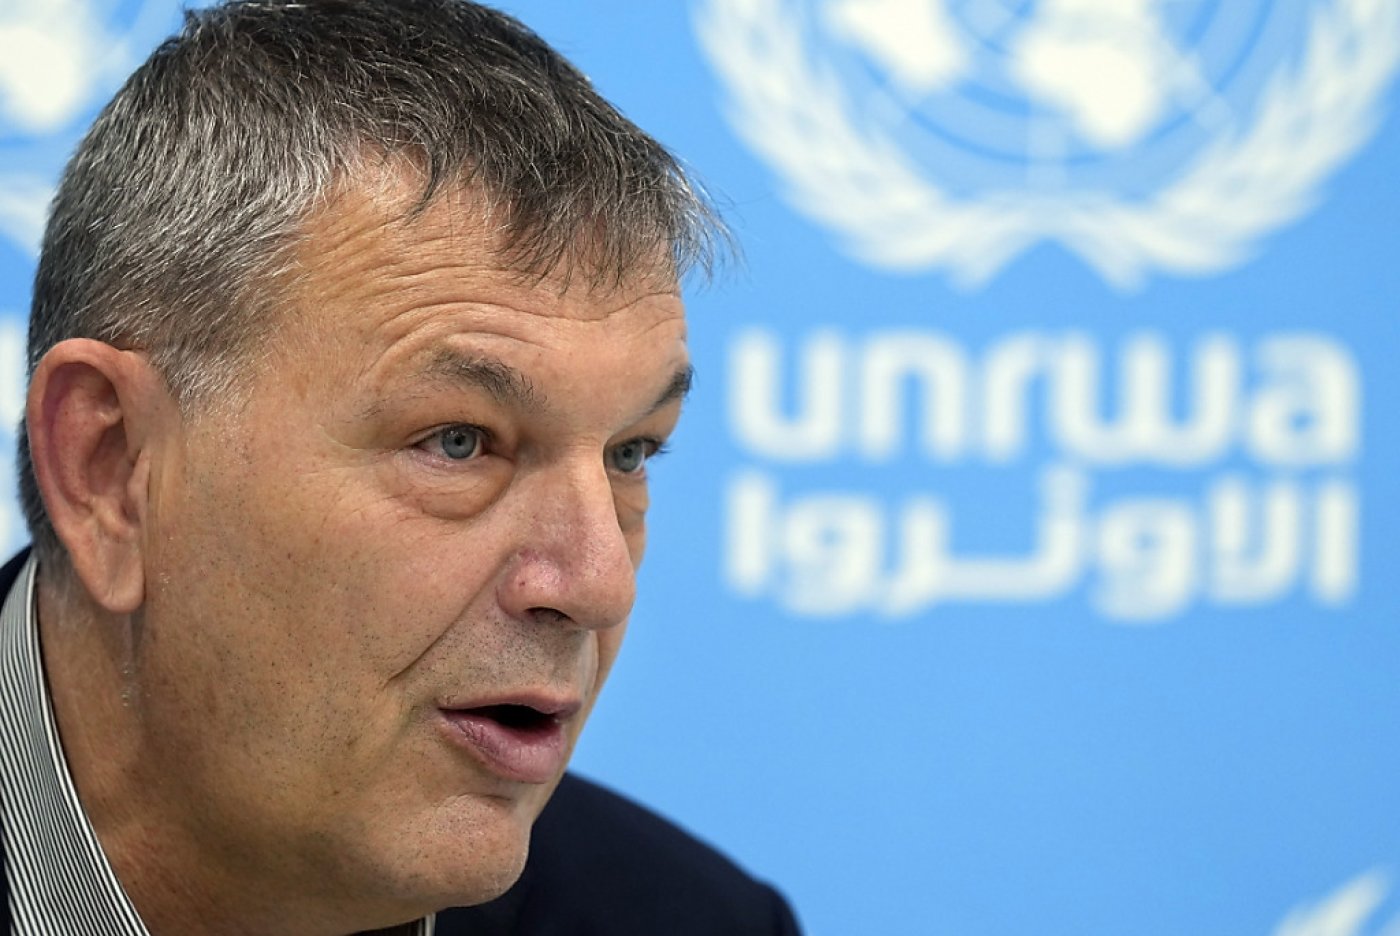 Le chef de l'UNRWA Philippe Lazzarini a réclamé aux membres du Conseil de sécurité une enquête indépendante (archives). KEYSTONE